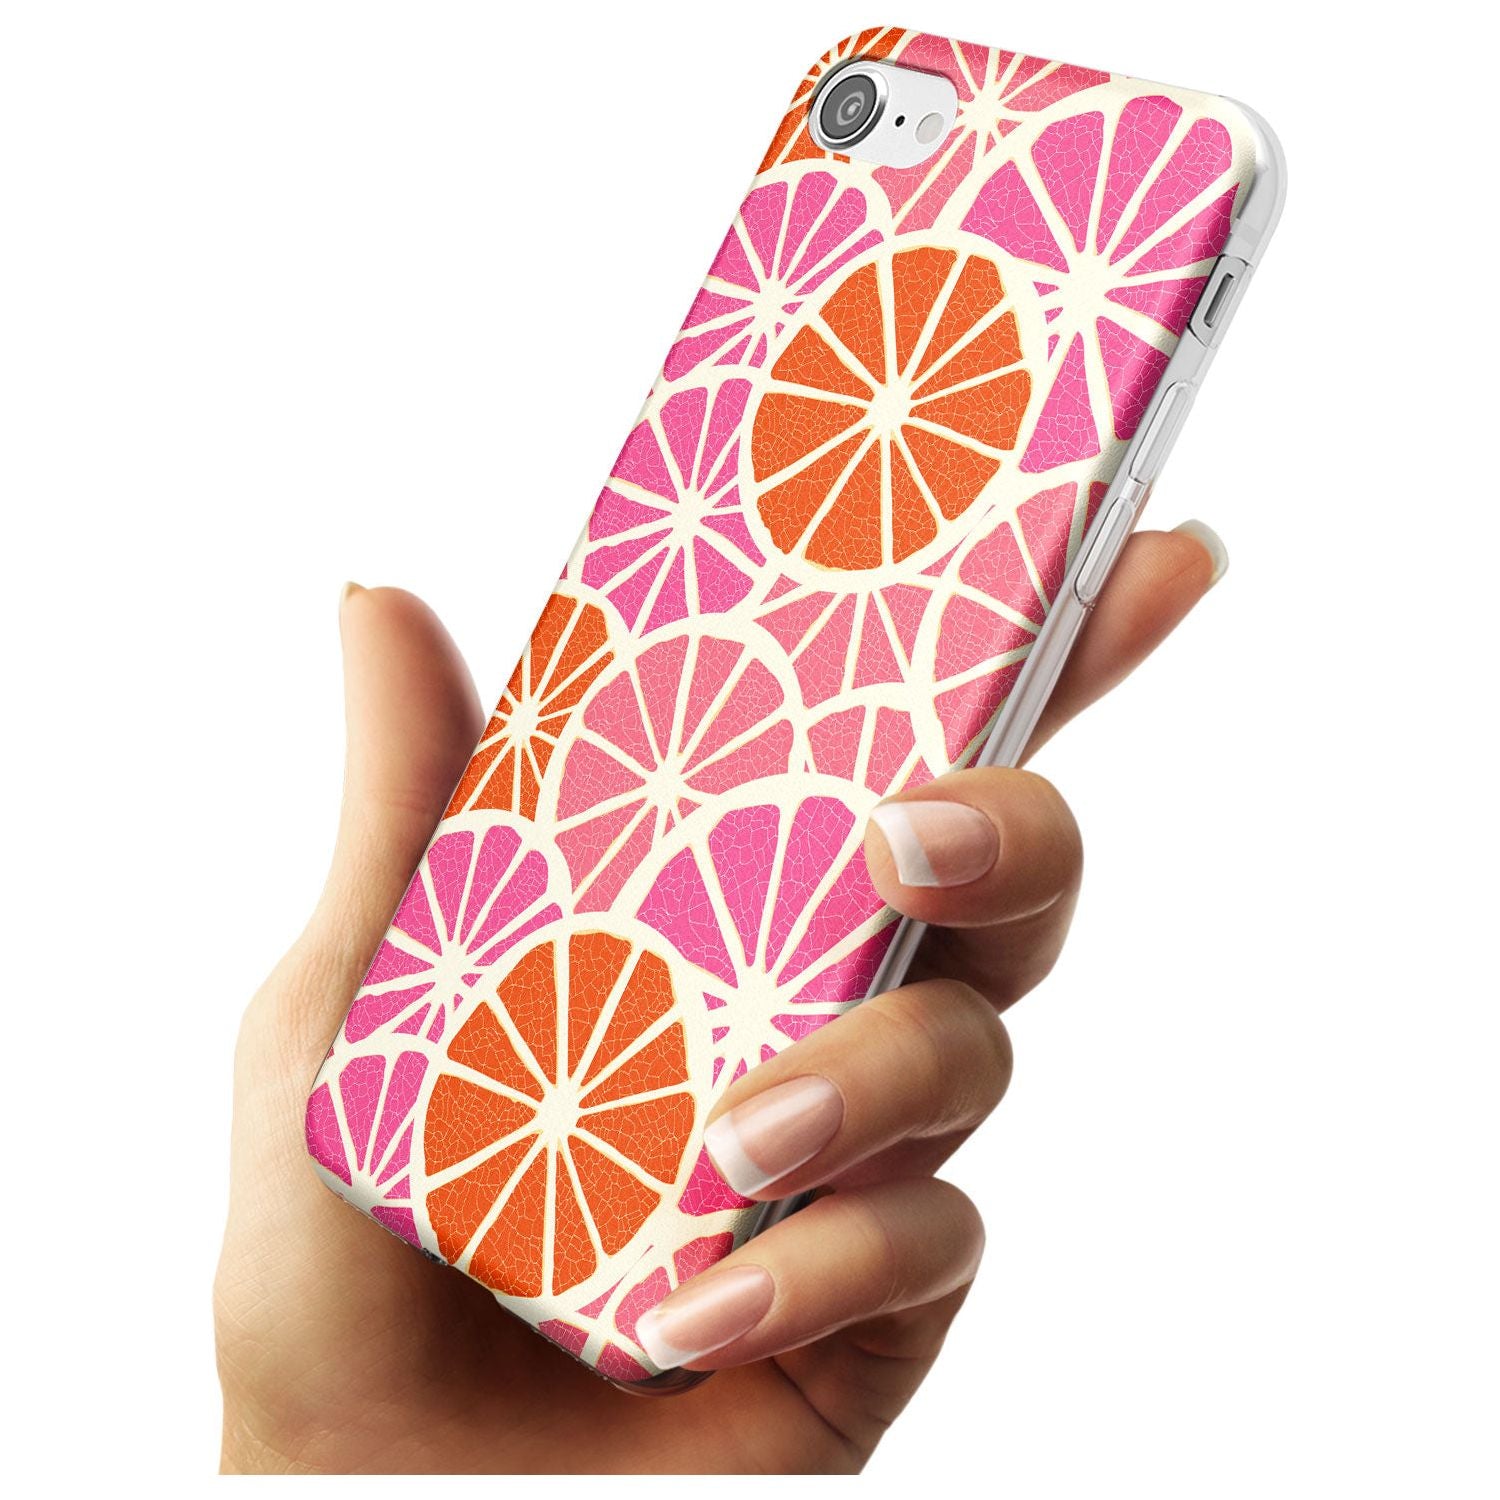 Citrus Slices Black Impact Phone Case for iPhone SE 8 7 Plus